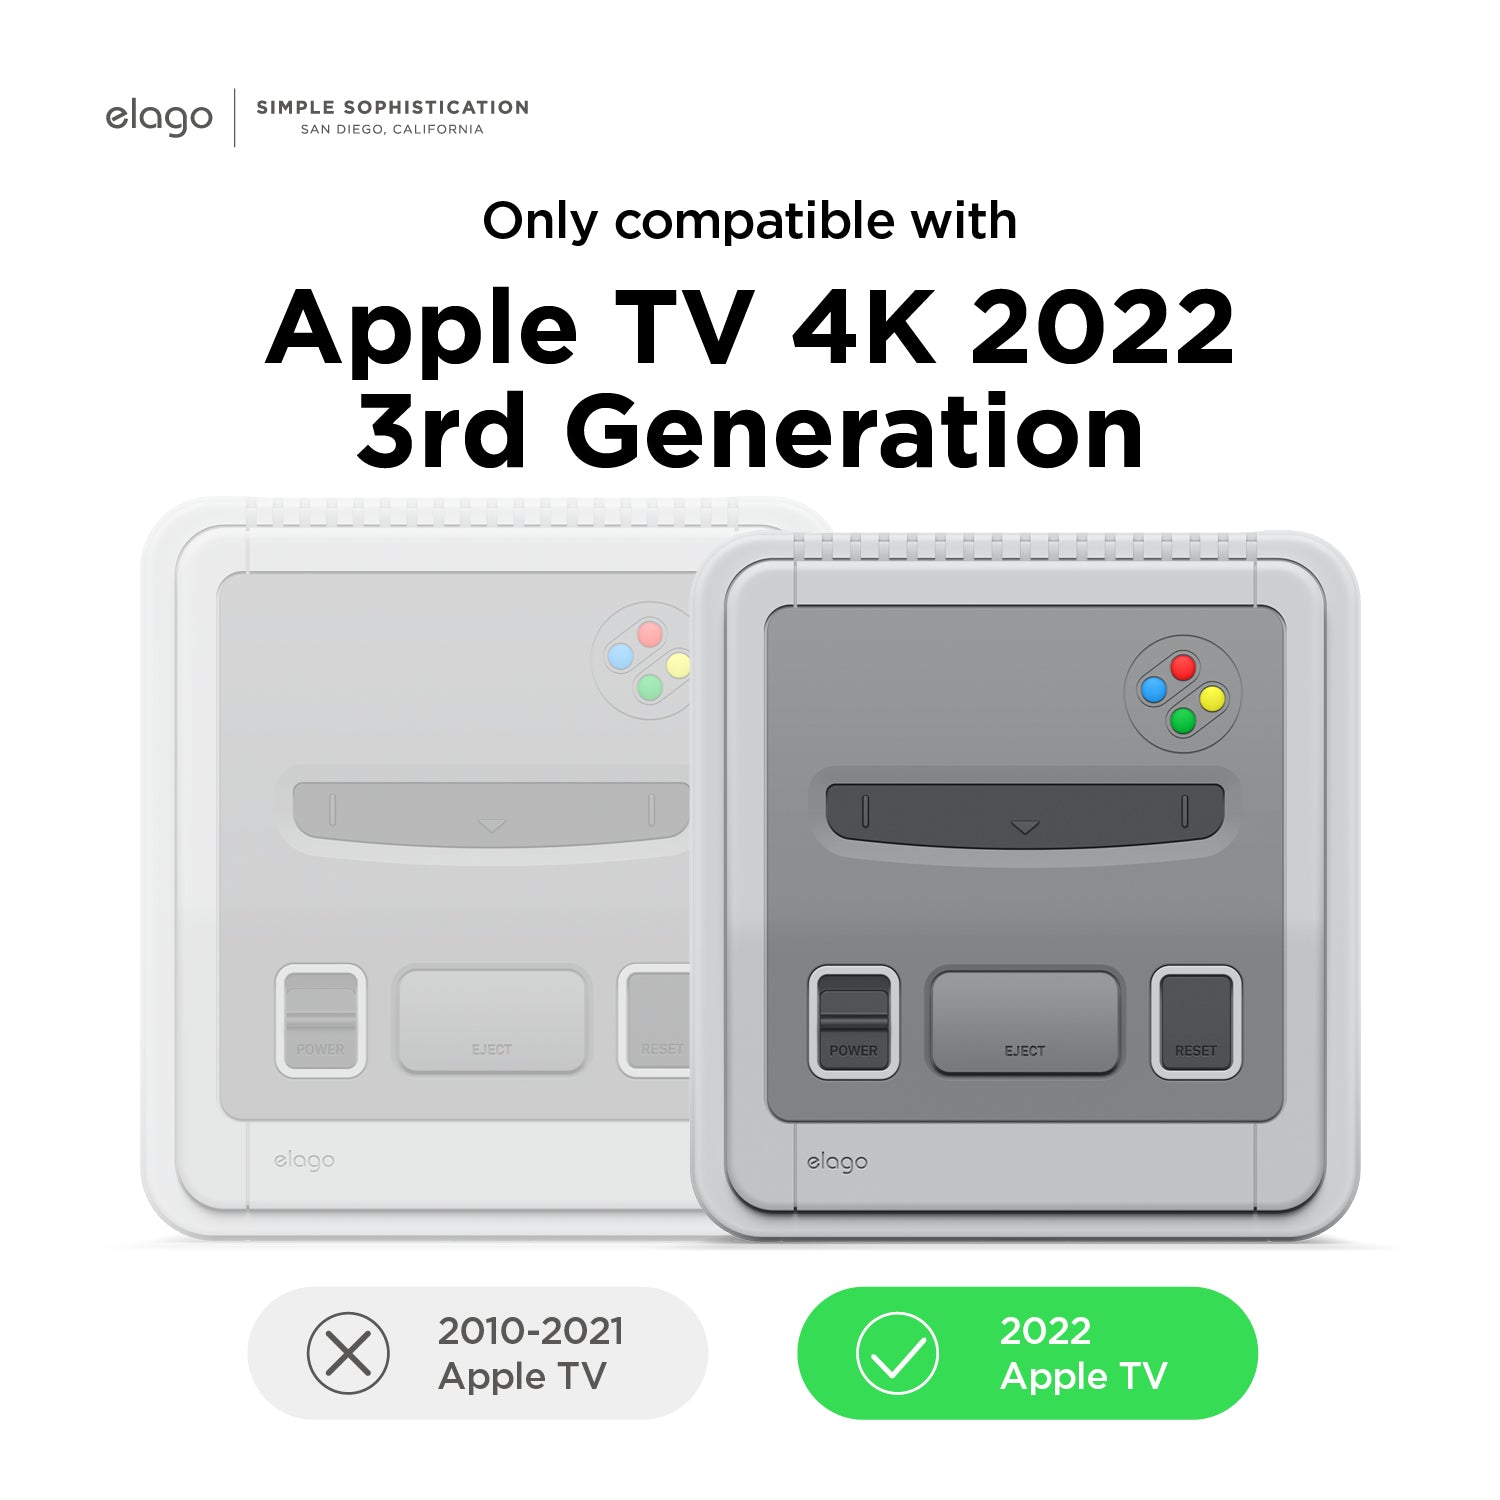 Elago met enfin en vente sa coque Apple TV inspirée de la Super NES